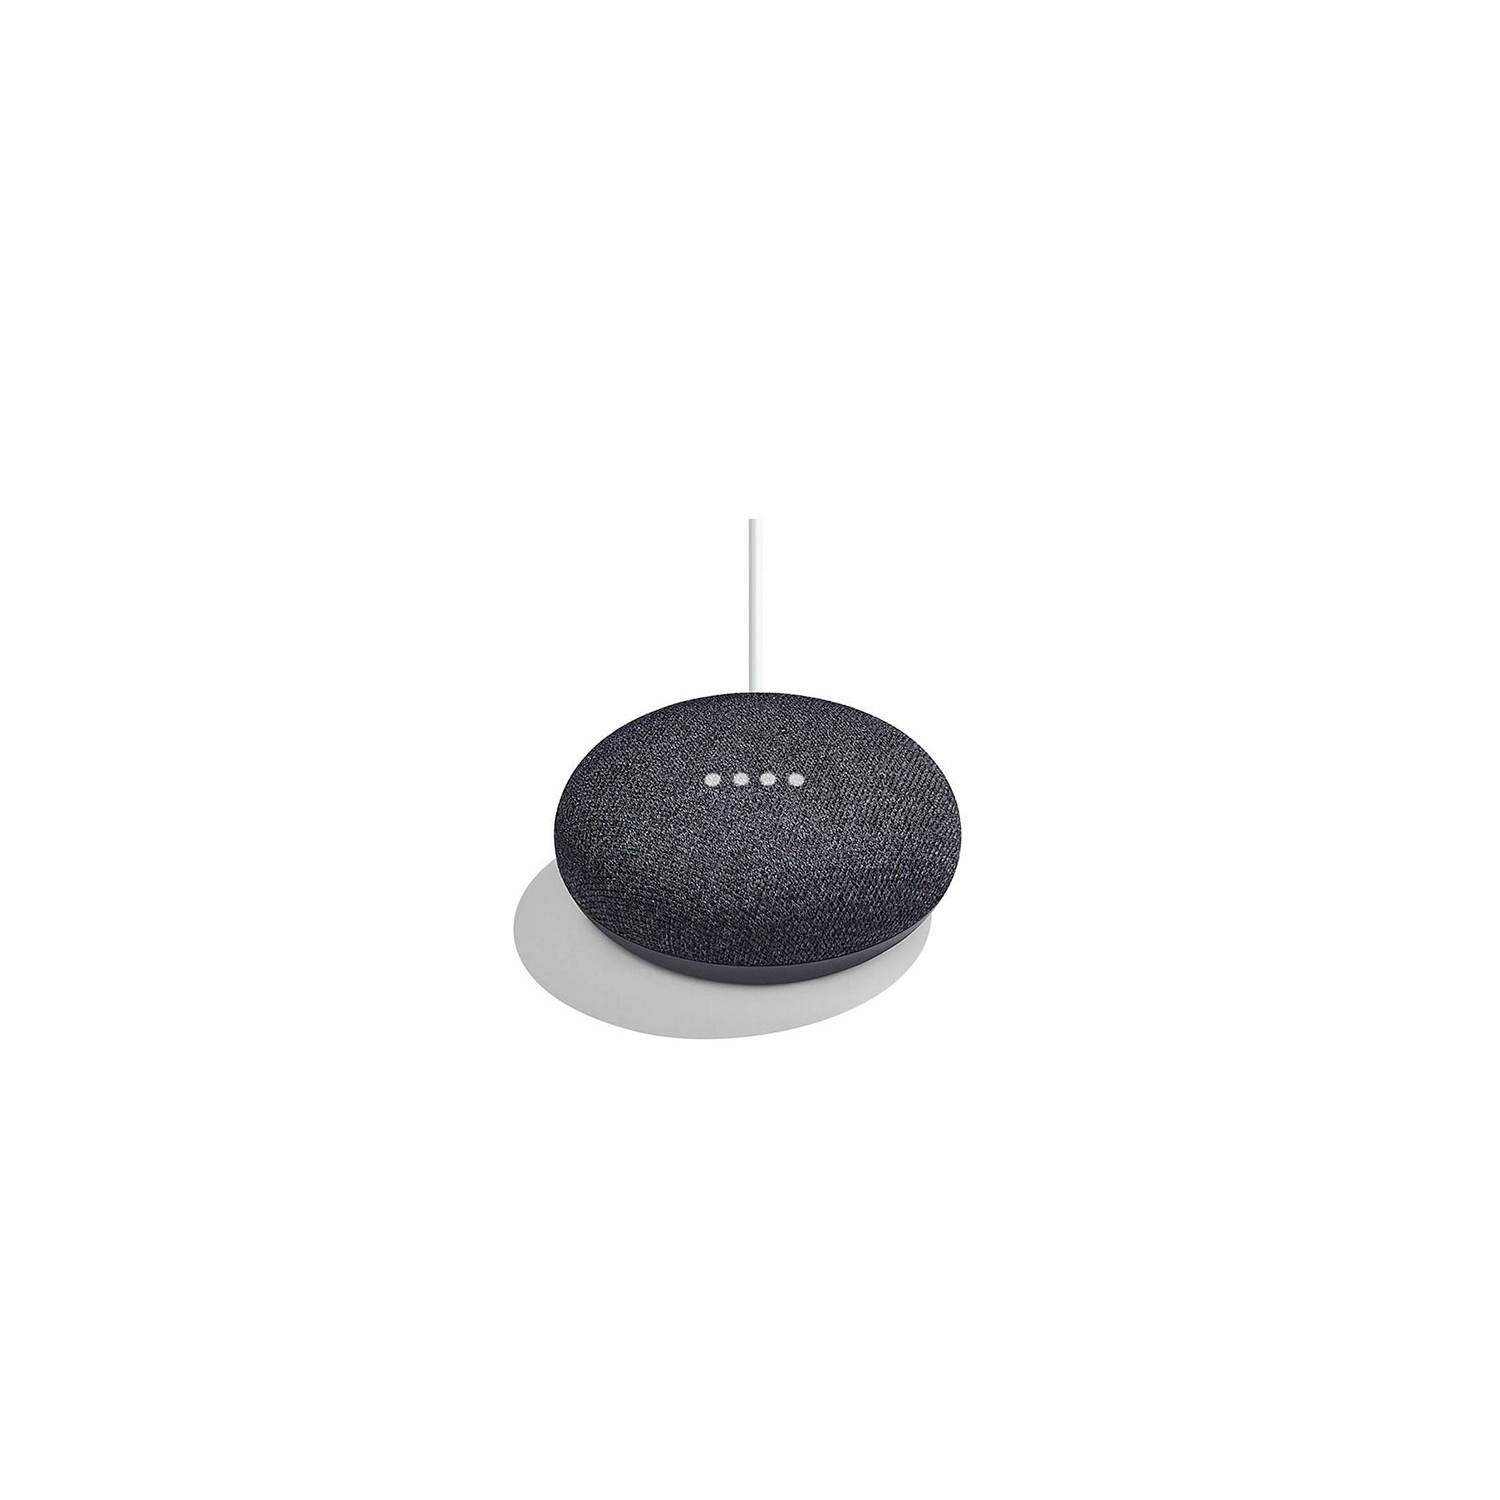 Google Home Mini Parlante inteligente con control por Voz – Zoladi